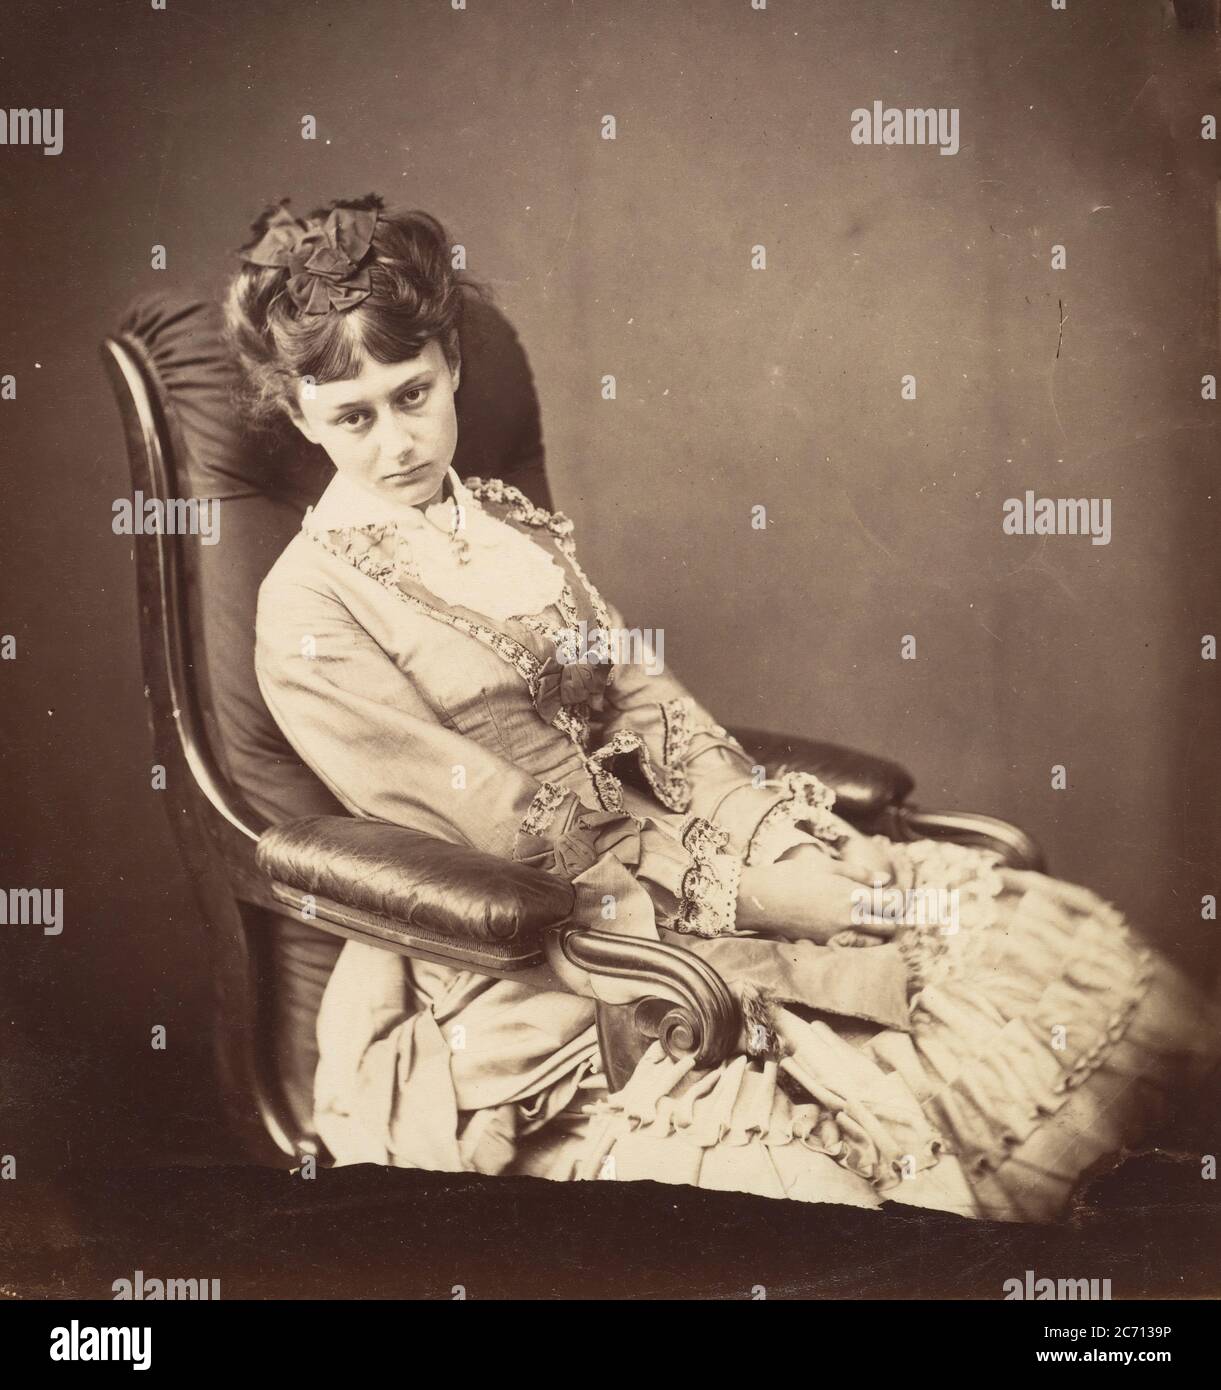 [Alice Liddell], June 25, 1870. Stock Photo